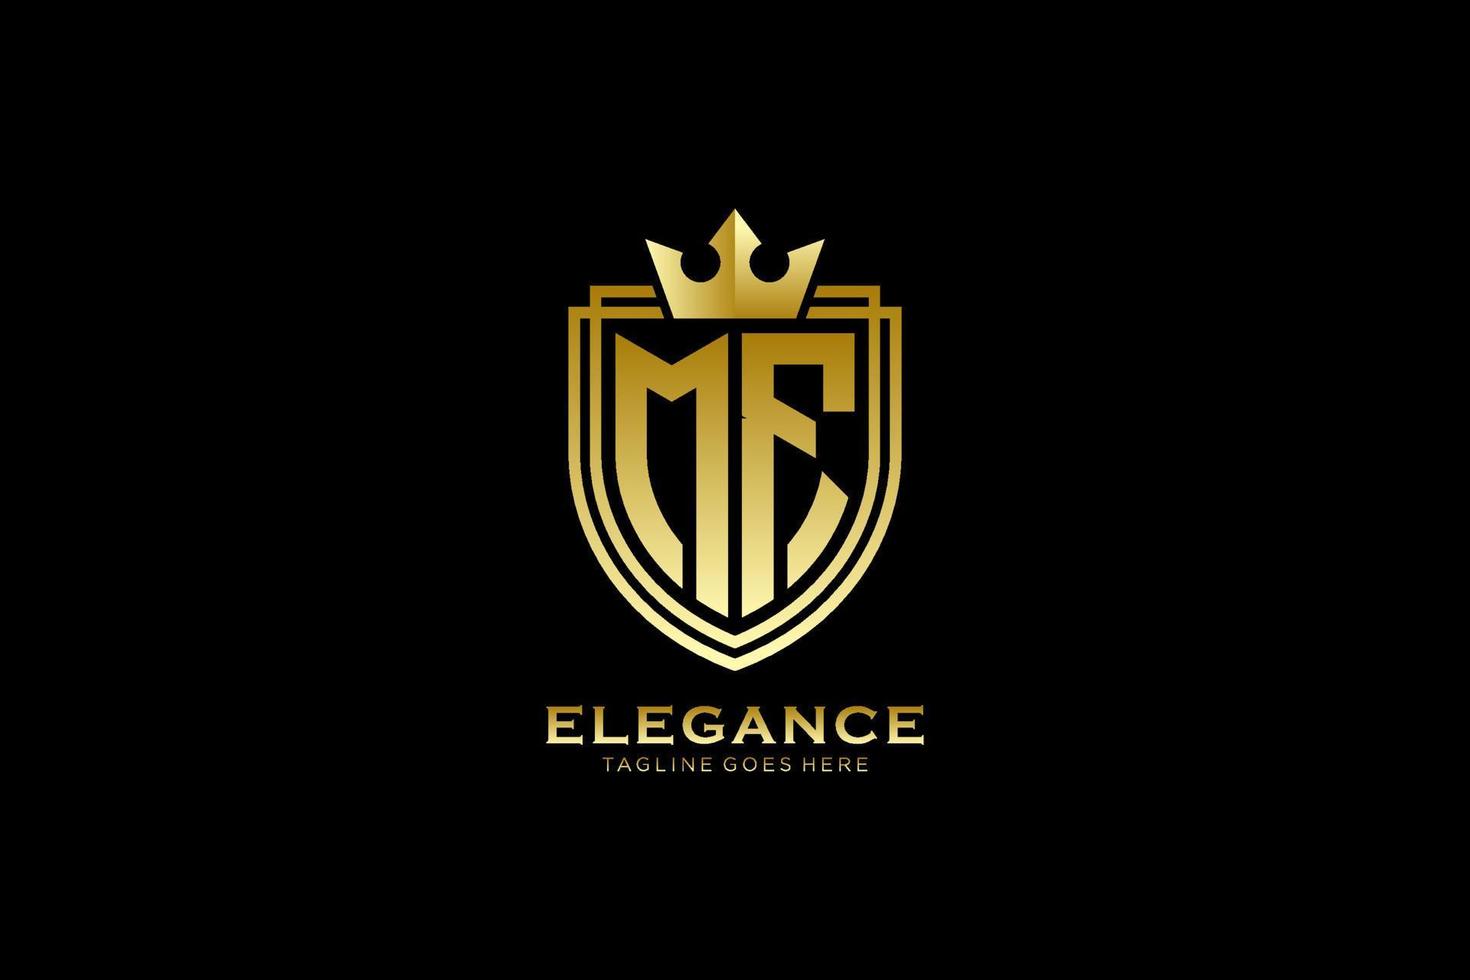 logotipo de monograma de lujo inicial mf elegante o plantilla de placa con pergaminos y corona real - perfecto para proyectos de marca de lujo vector